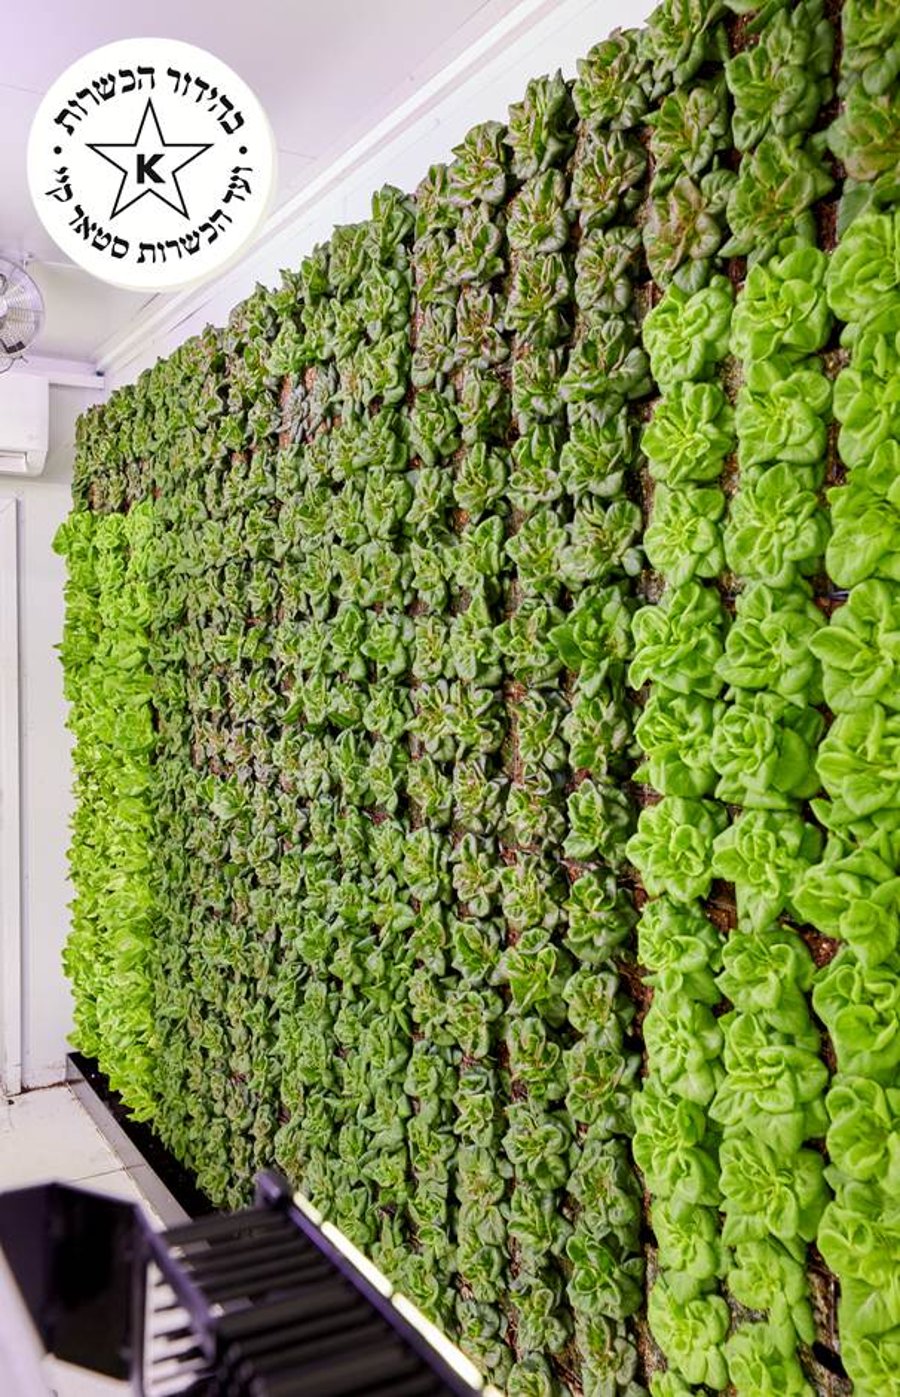 ירקות מהדרין ללא חרקים הגדלים על קירות ייחודיים ללא חומרי הדברה כלל